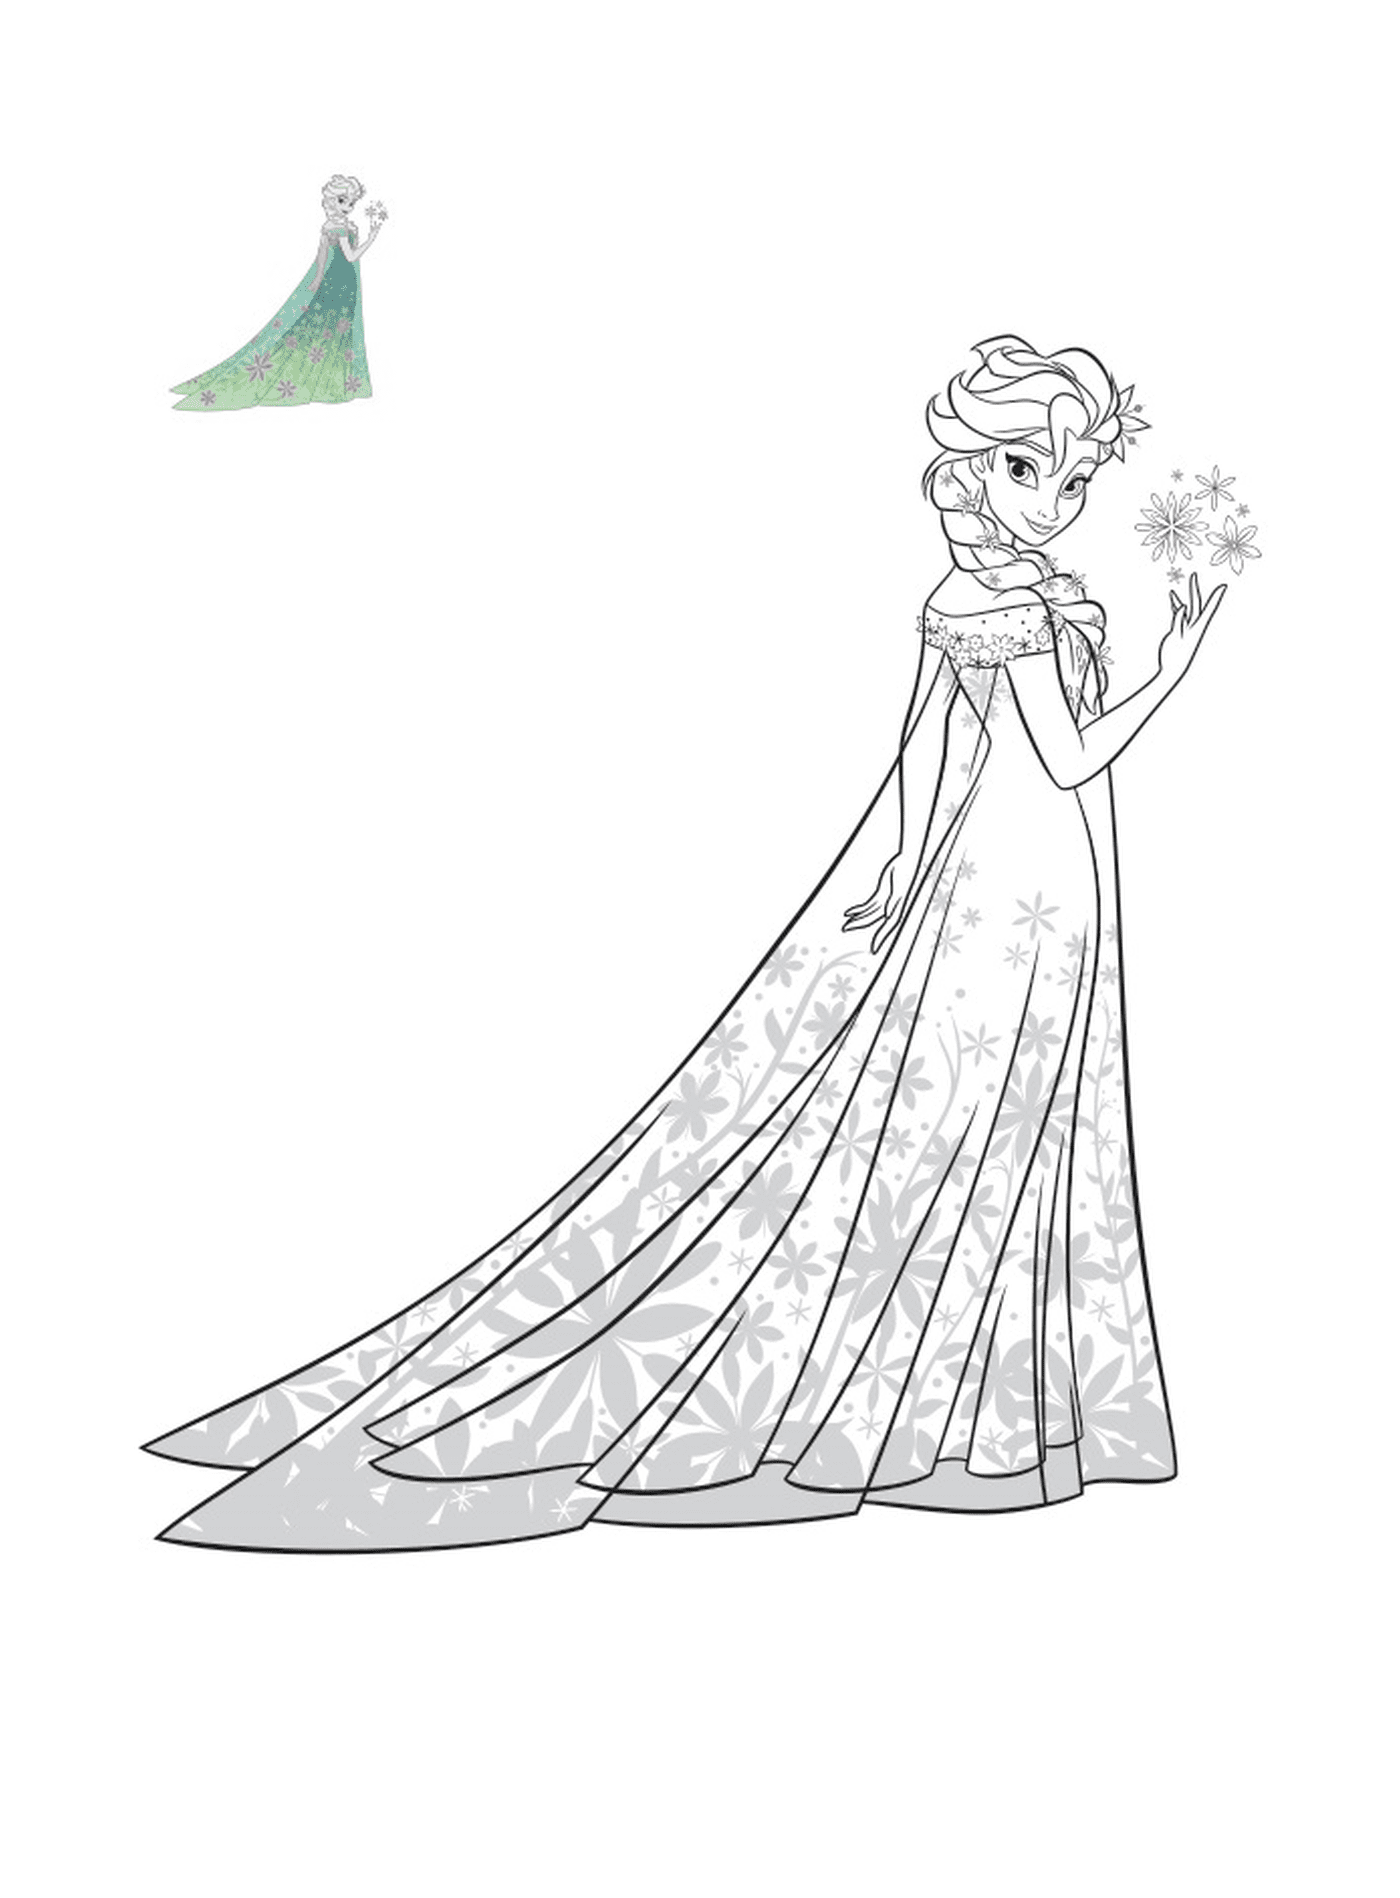   Elsa de La Reine des neiges dans une robe exotique 